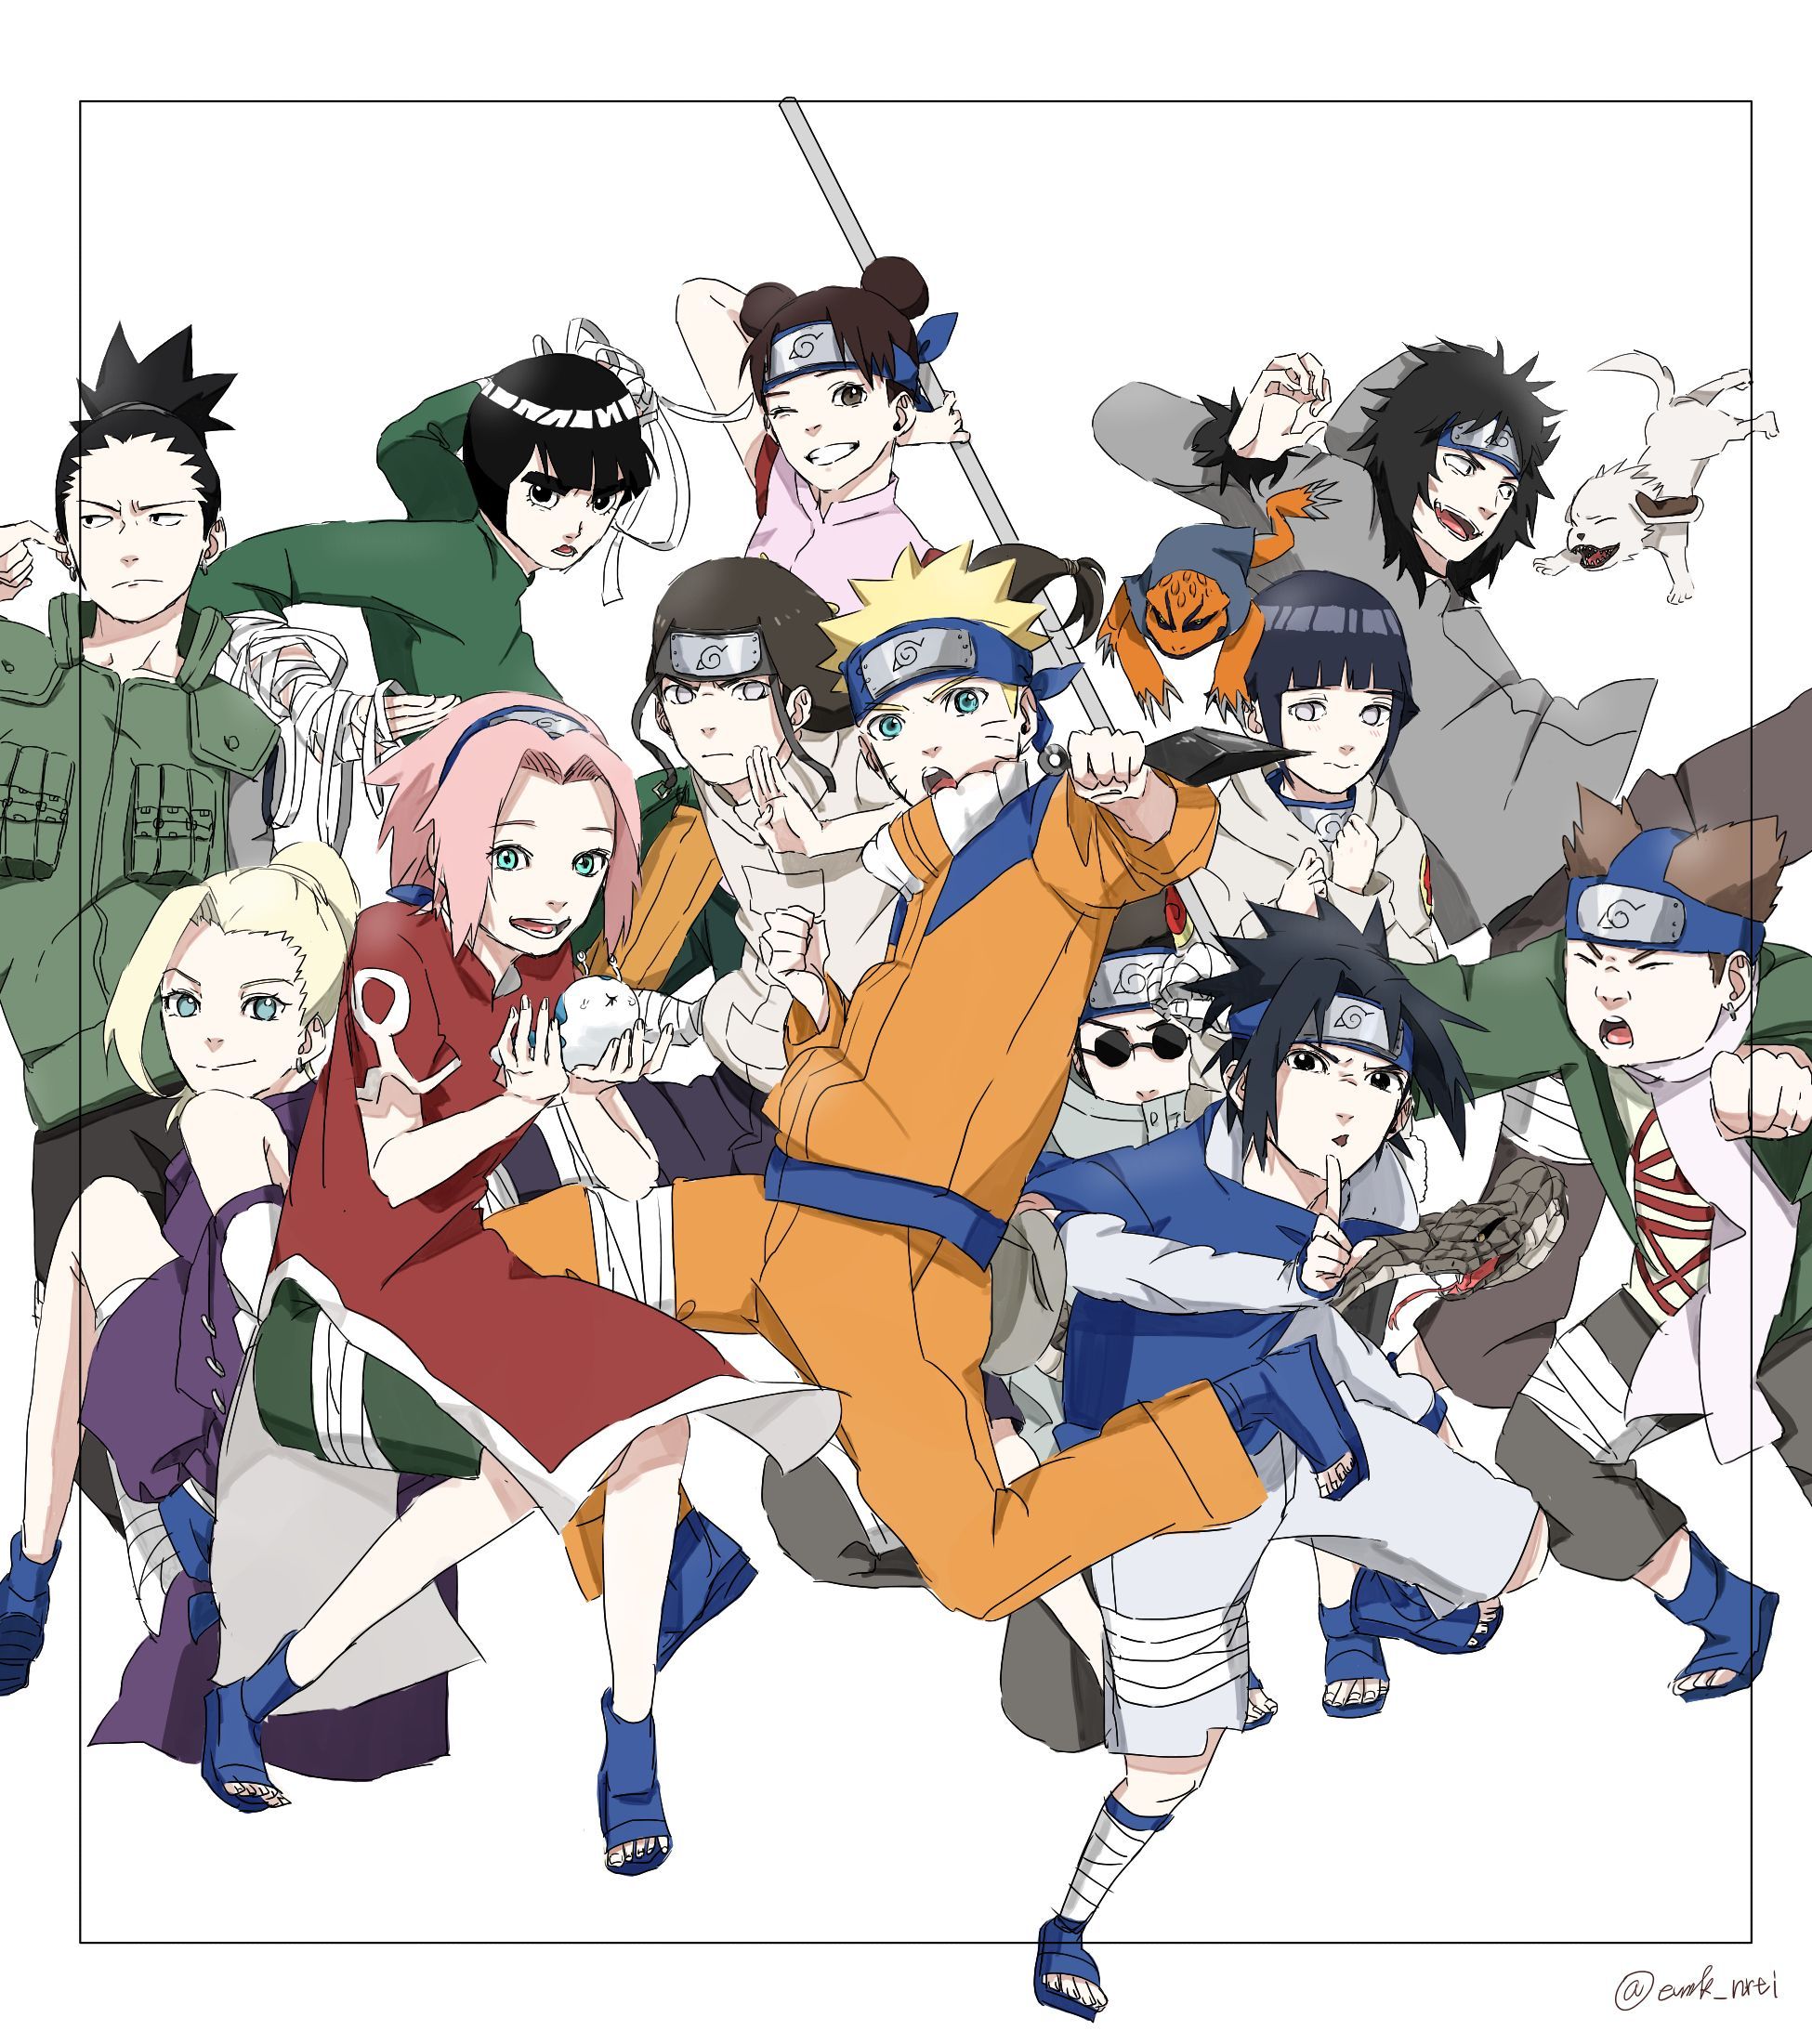 NARUTO/. Naruto shippuden anime, Anime naruto, Naruto shippuden sasuke